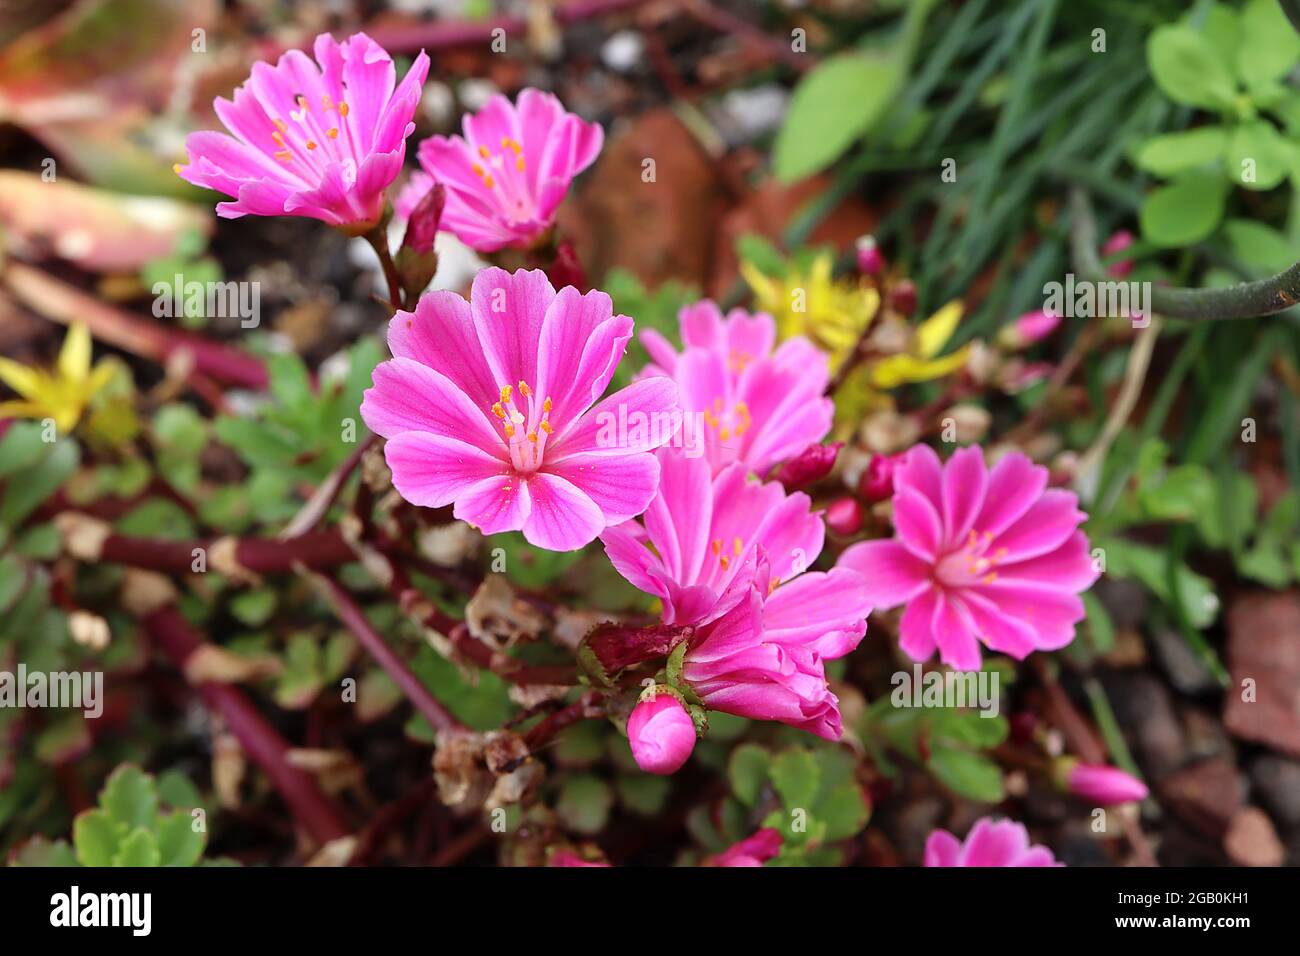 Lewisia cotyledon ‘Elise Mix’ Siskiyou lewisia Elise Mix – open funnel-shaped deep pink flowers with white edges,  June, England, UK Stock Photo